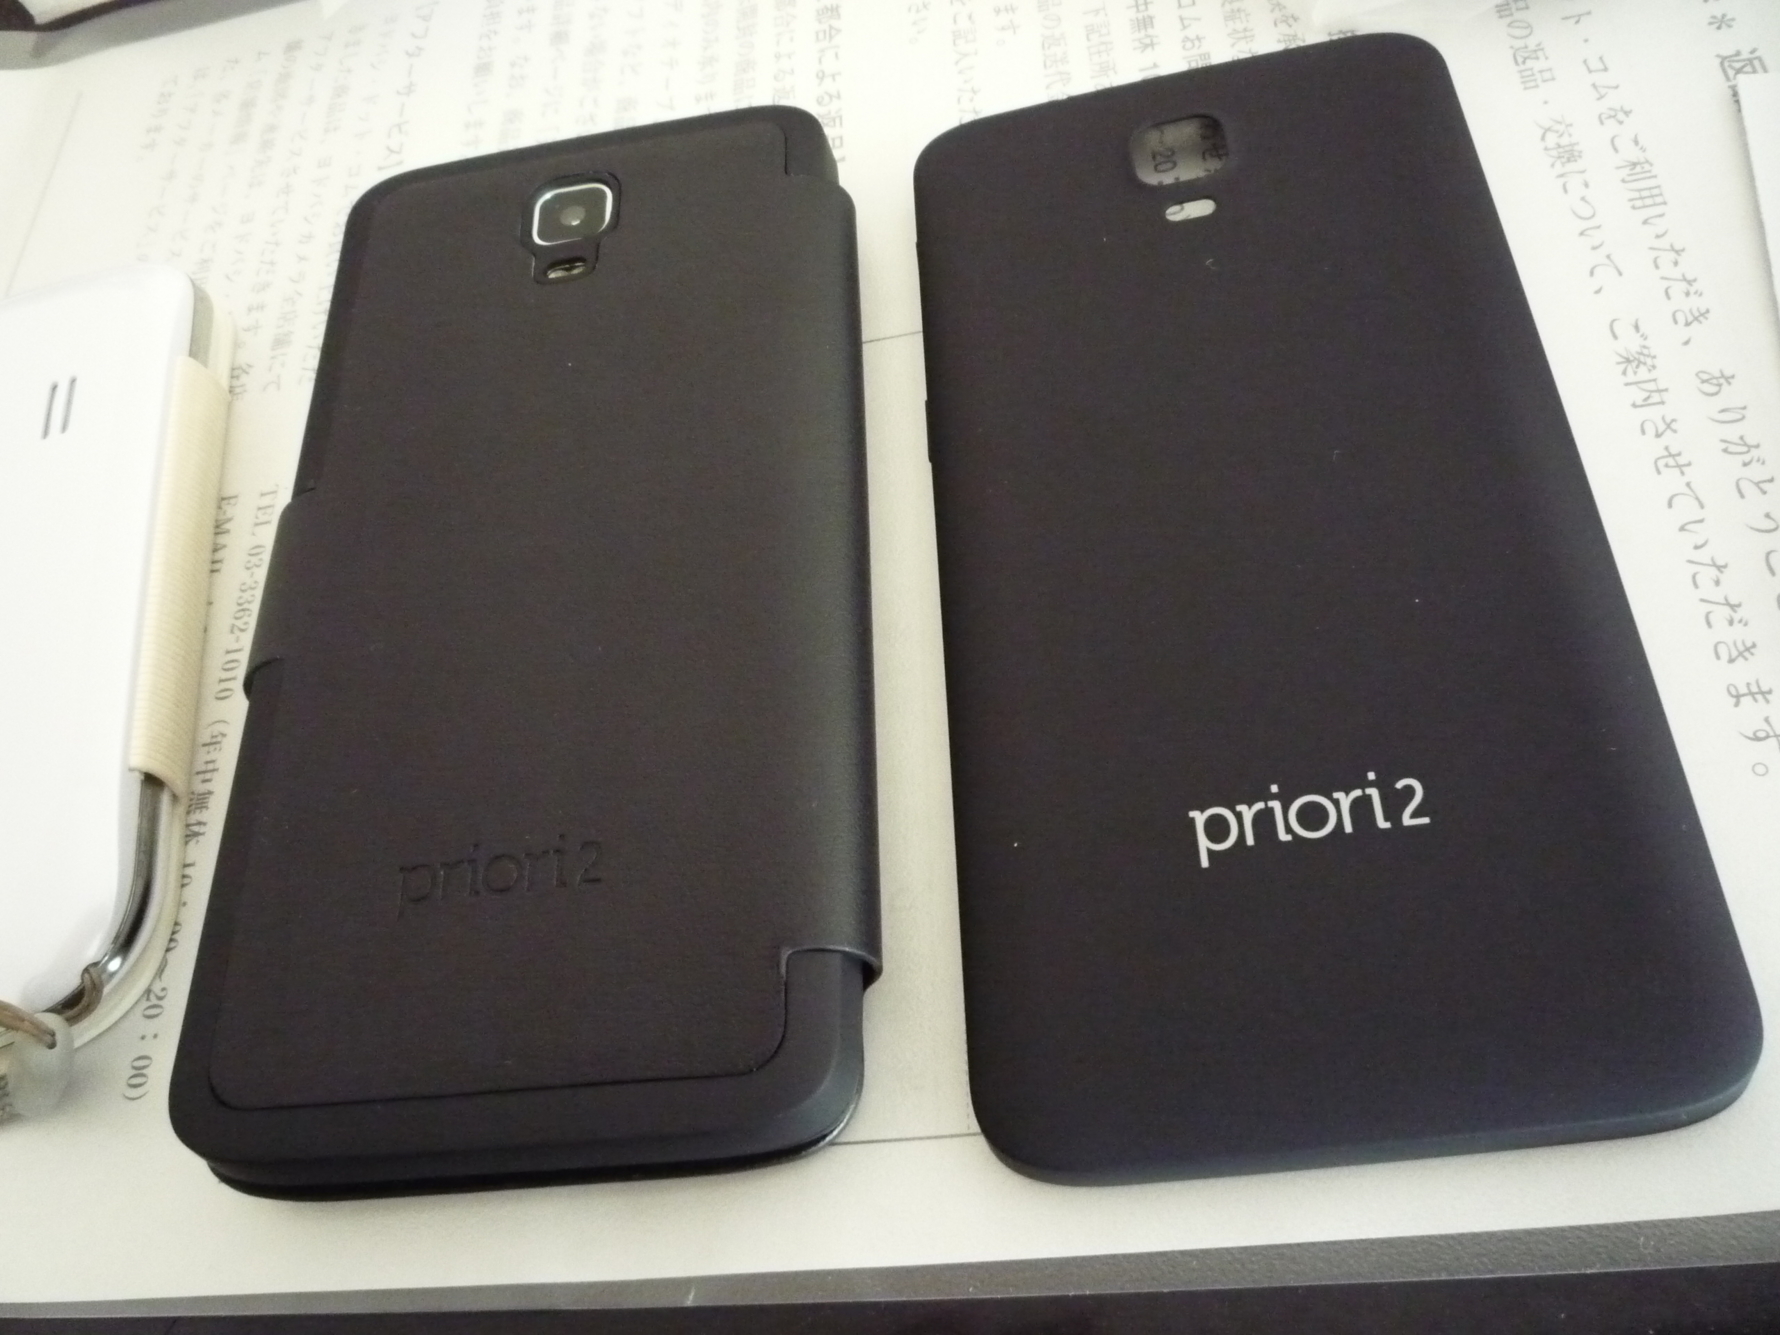 フリップカバーを装着した priori2 と標準の電池蓋。